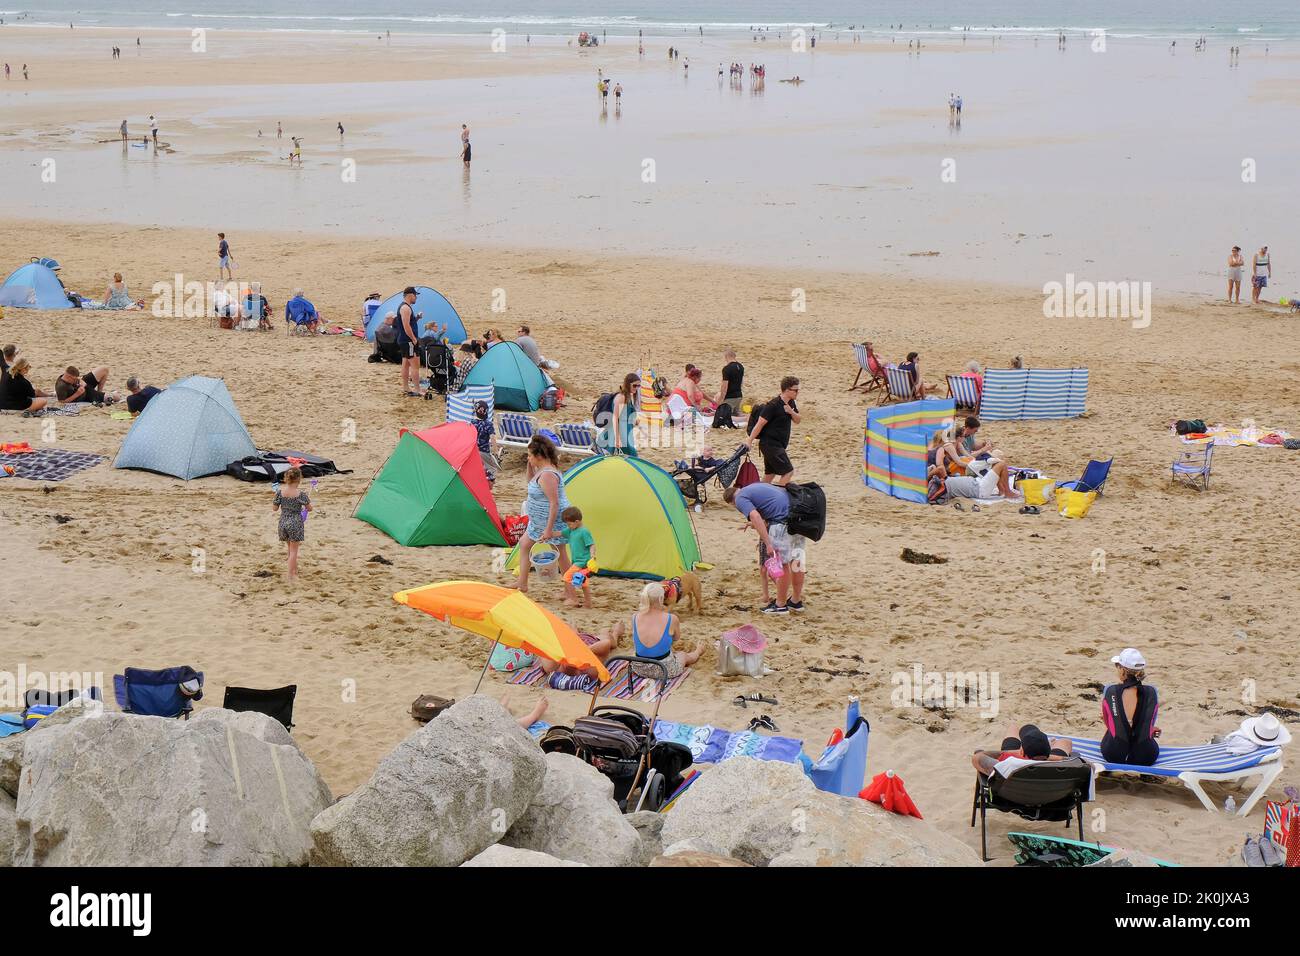 Les vacanciers du Royaume-Uni sur Fistral Beach ont profité du soleil brumeux et chaud et de la brise marine rafraîchissante de Newquay en Cornouailles. Banque D'Images